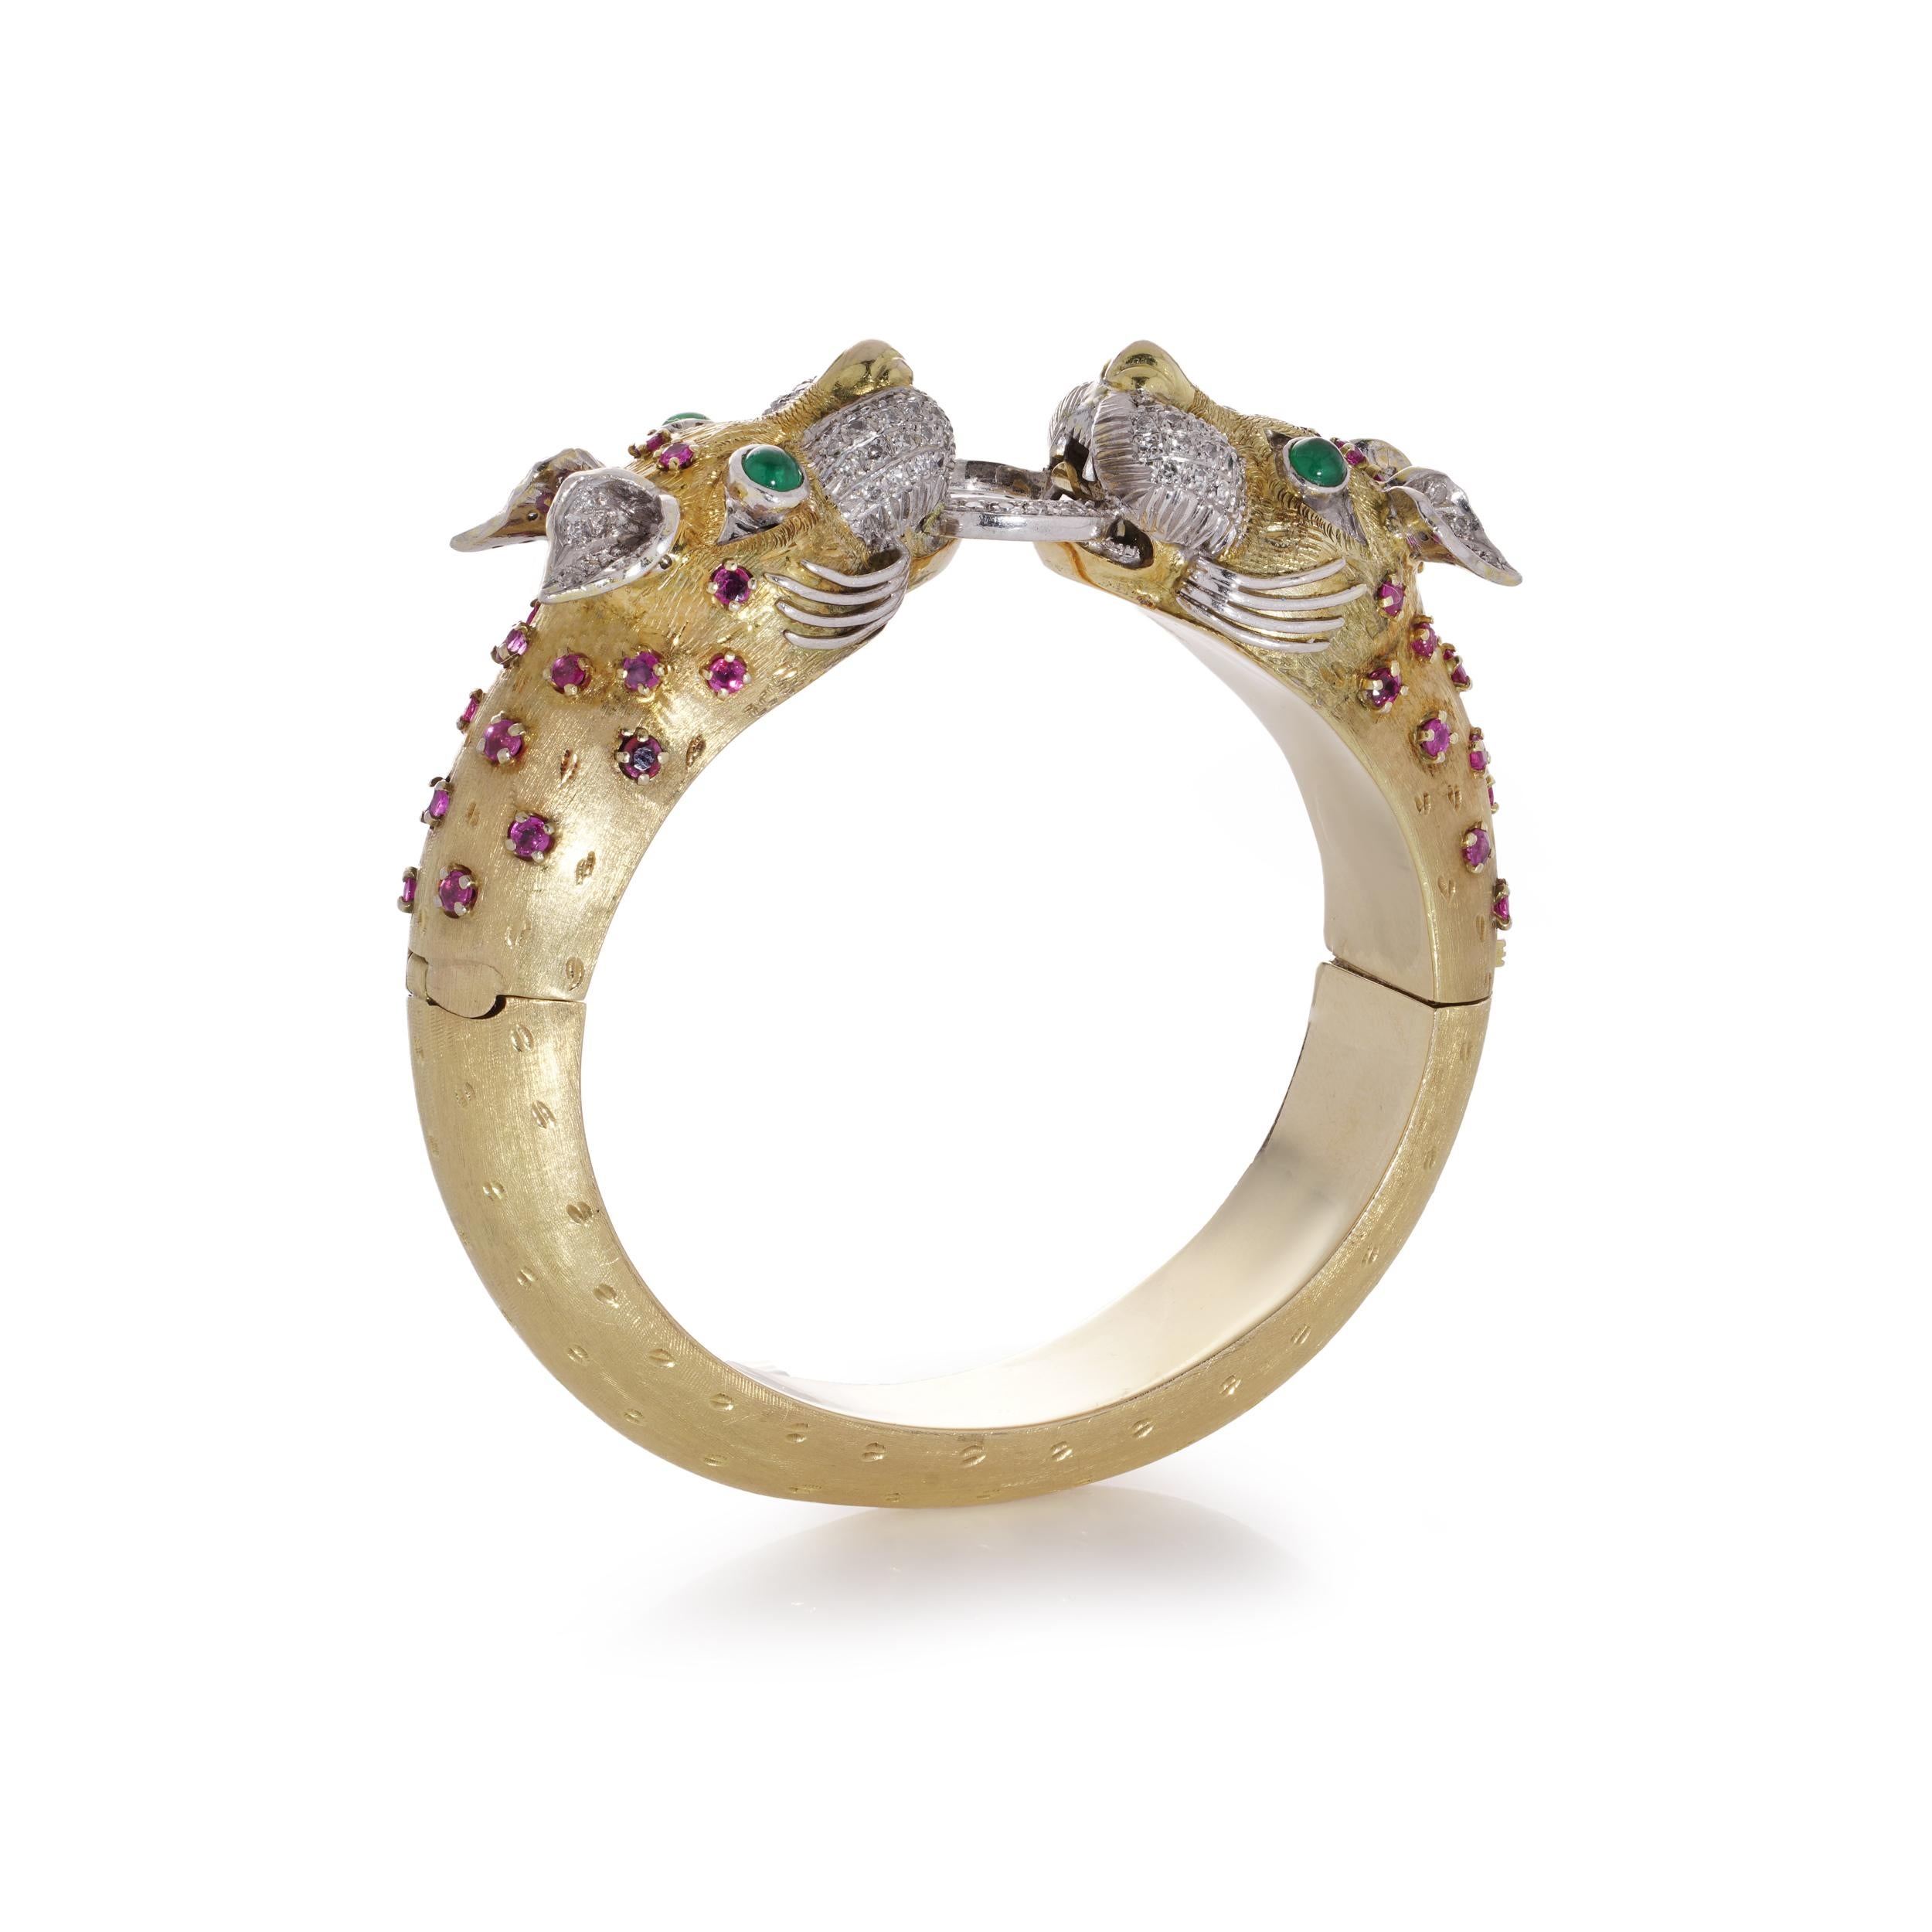 Bracelet en or jaune et blanc de Whiting avec deux têtes de dragon et 118 diamants, émeraudes et rubis.

Approx. Dimensions :
Le bracelet a un diamètre intérieur de 59,7 mm x 53,6 mm (le plus long x le plus court).
La largeur supérieure est de 22,6